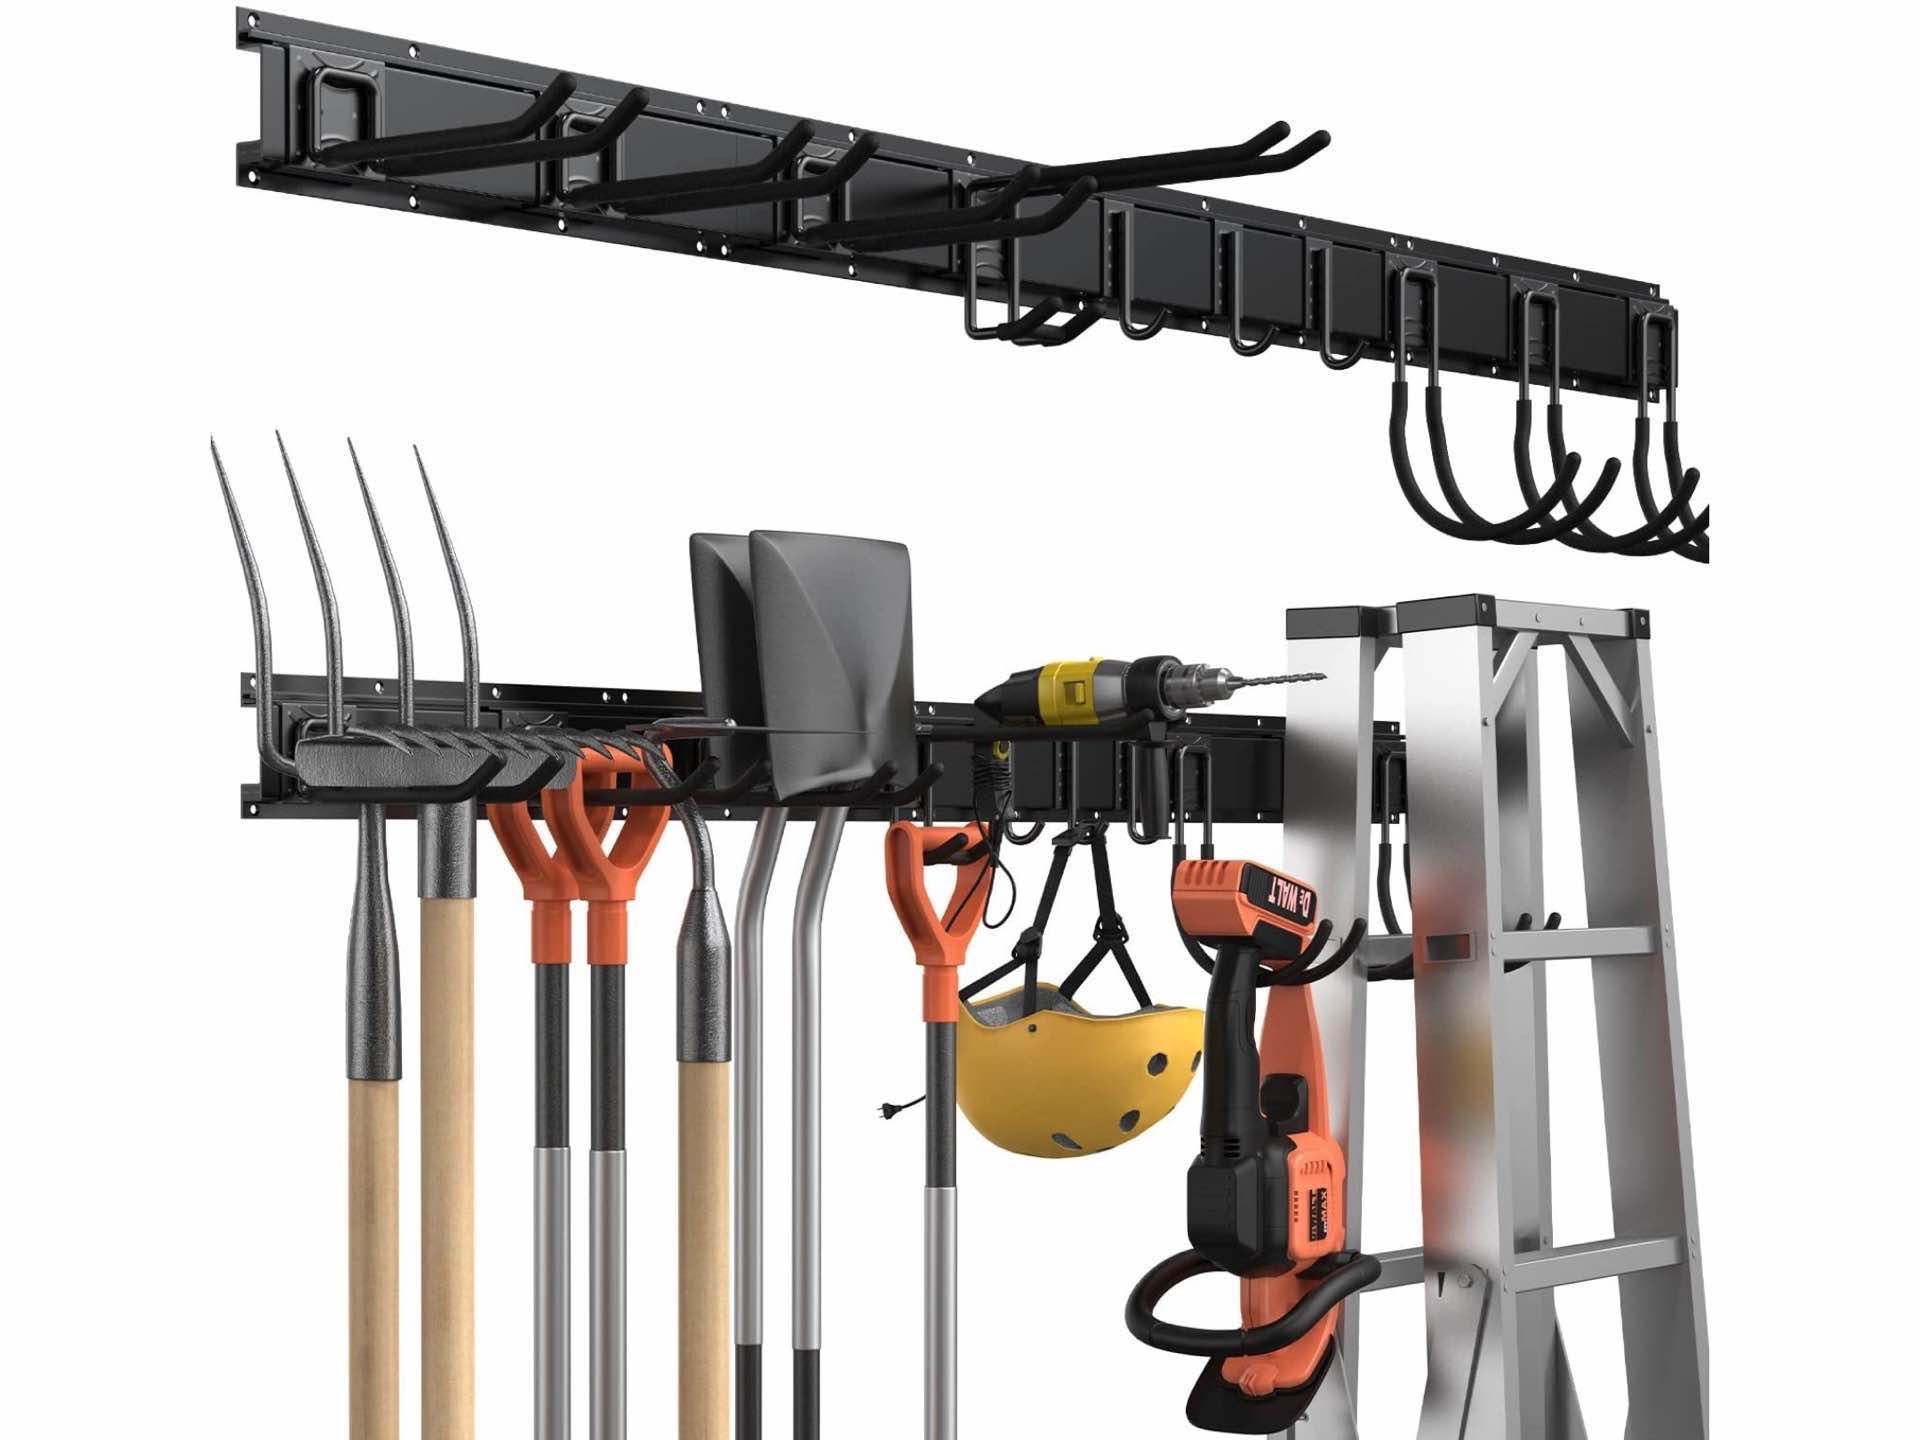 gatsowm-wall-mounted-garage-tool-storage-rack